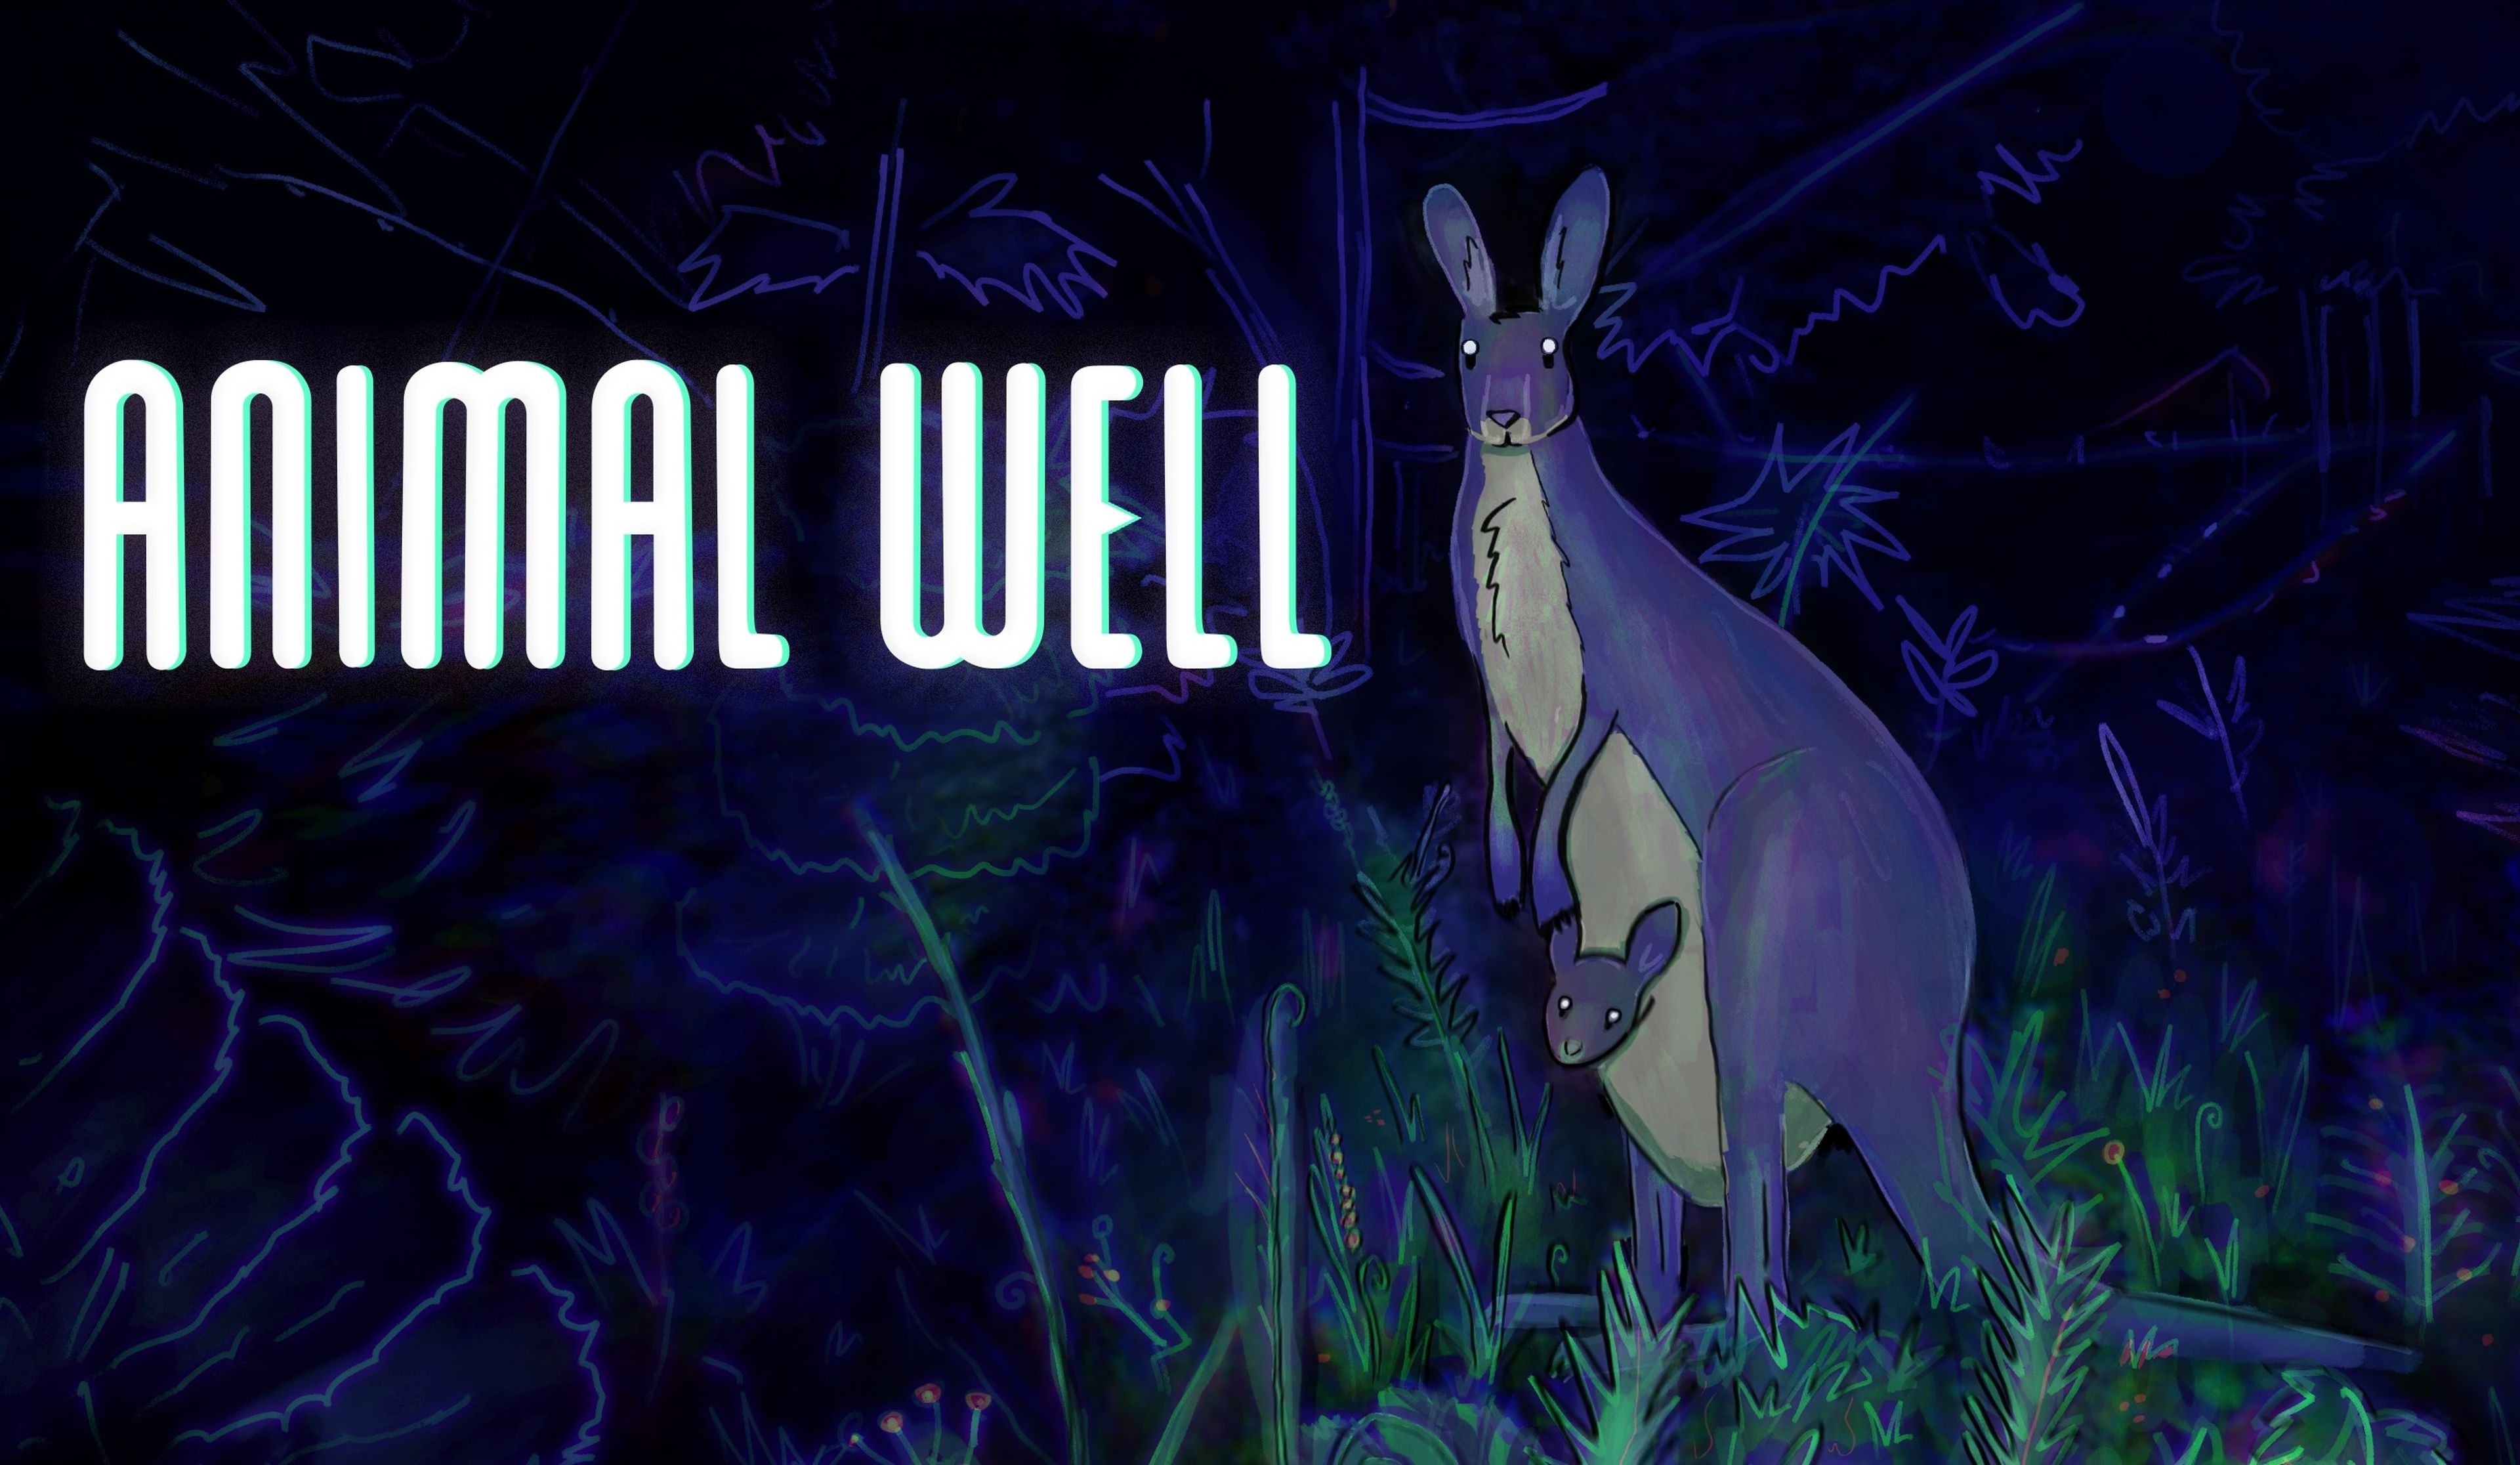 Animal Well análisis y opinión - PS5, Nintendo Switch y PC